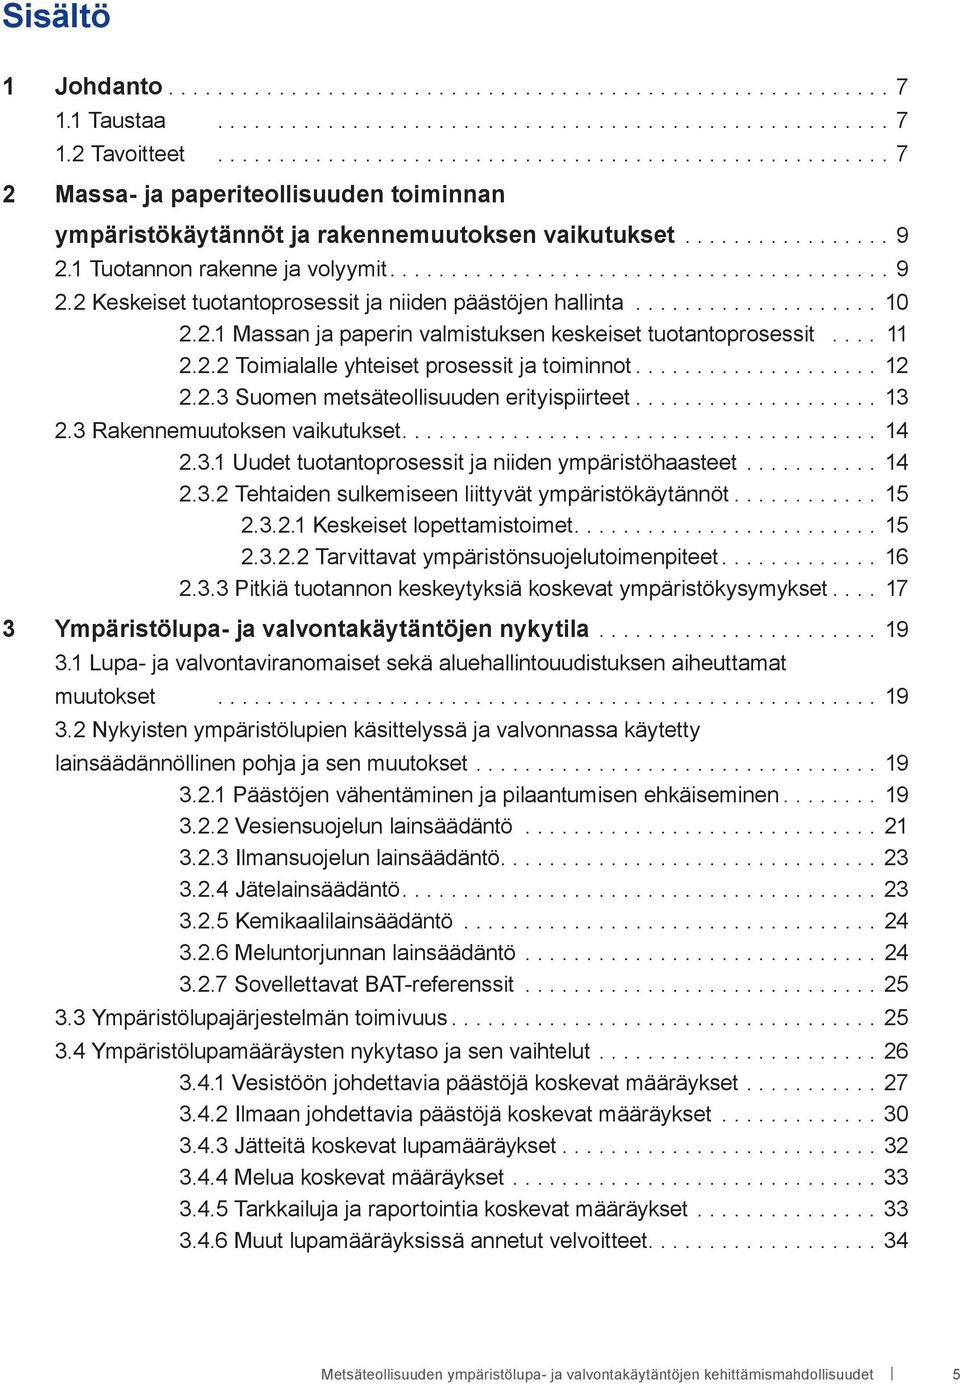 .. 12 2.2.3 Suomen metsäteollisuuden erityispiirteet... 13 2.3 Rakennemuutoksen vaikutukset.... 14 2.3.1 Uudet tuotantoprosessit ja niiden ympäristöhaasteet... 14 2.3.2 Tehtaiden sulkemiseen liittyvät ympäristökäytännöt.